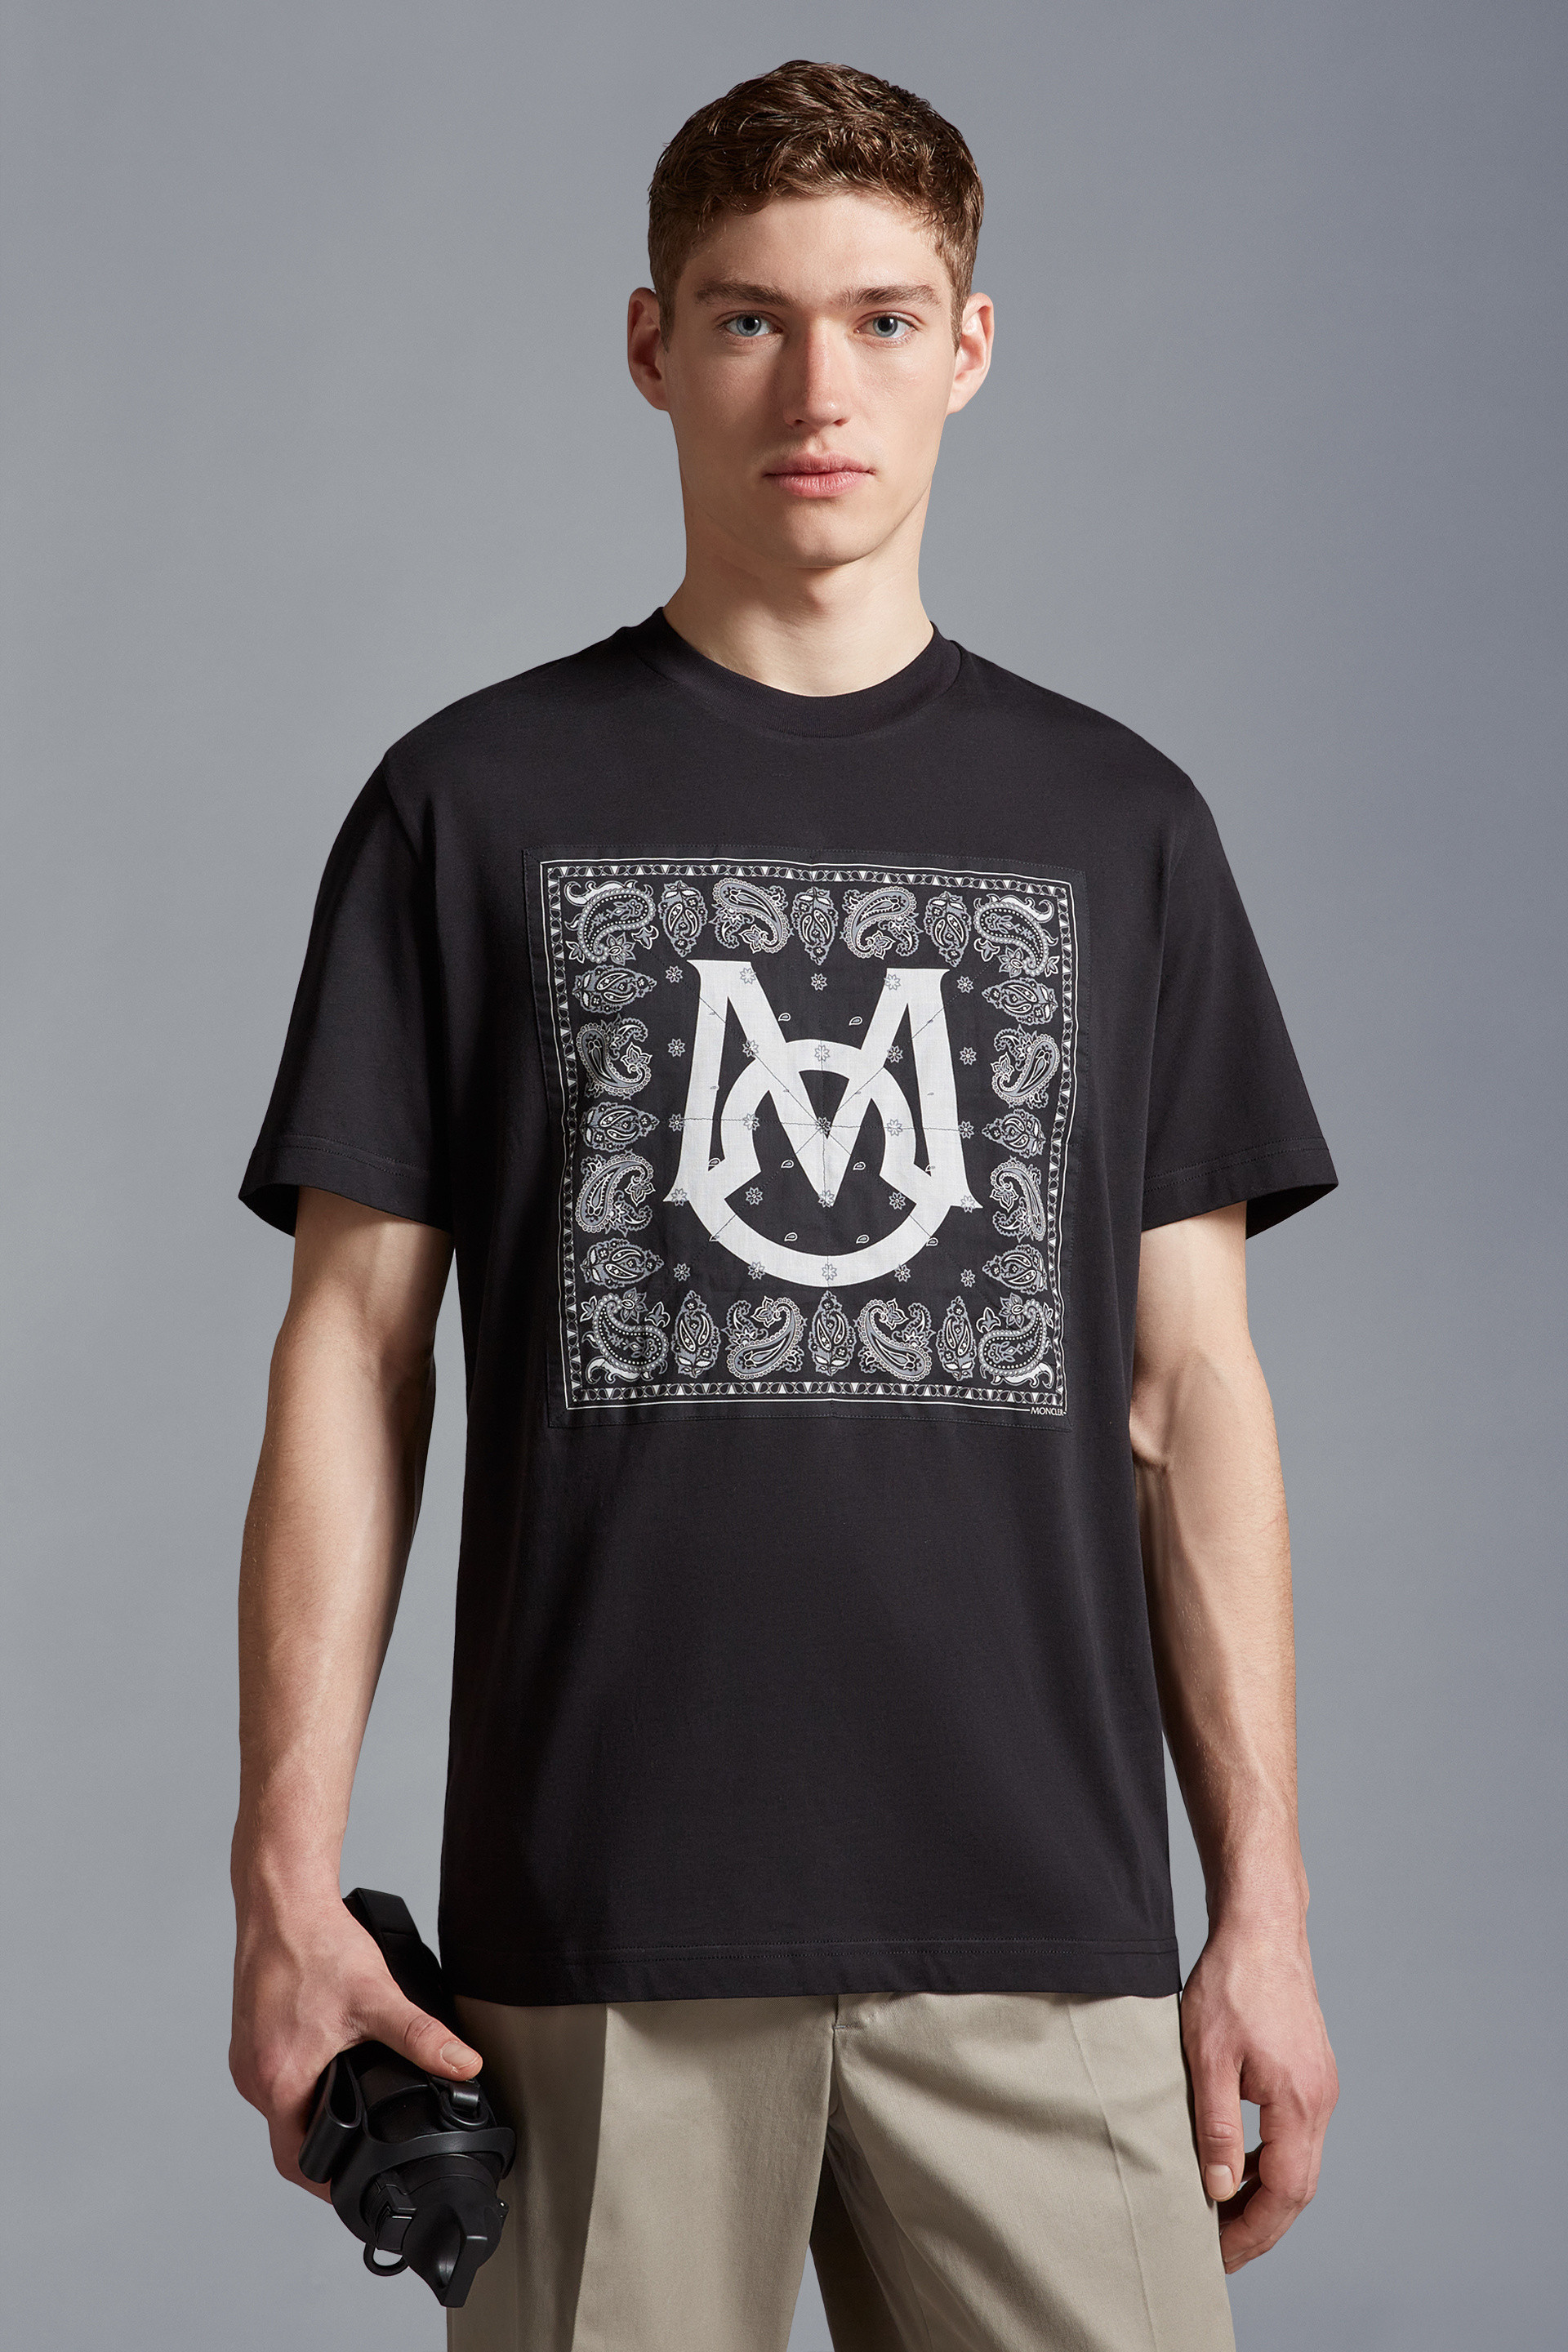 Moncler T-Shirt